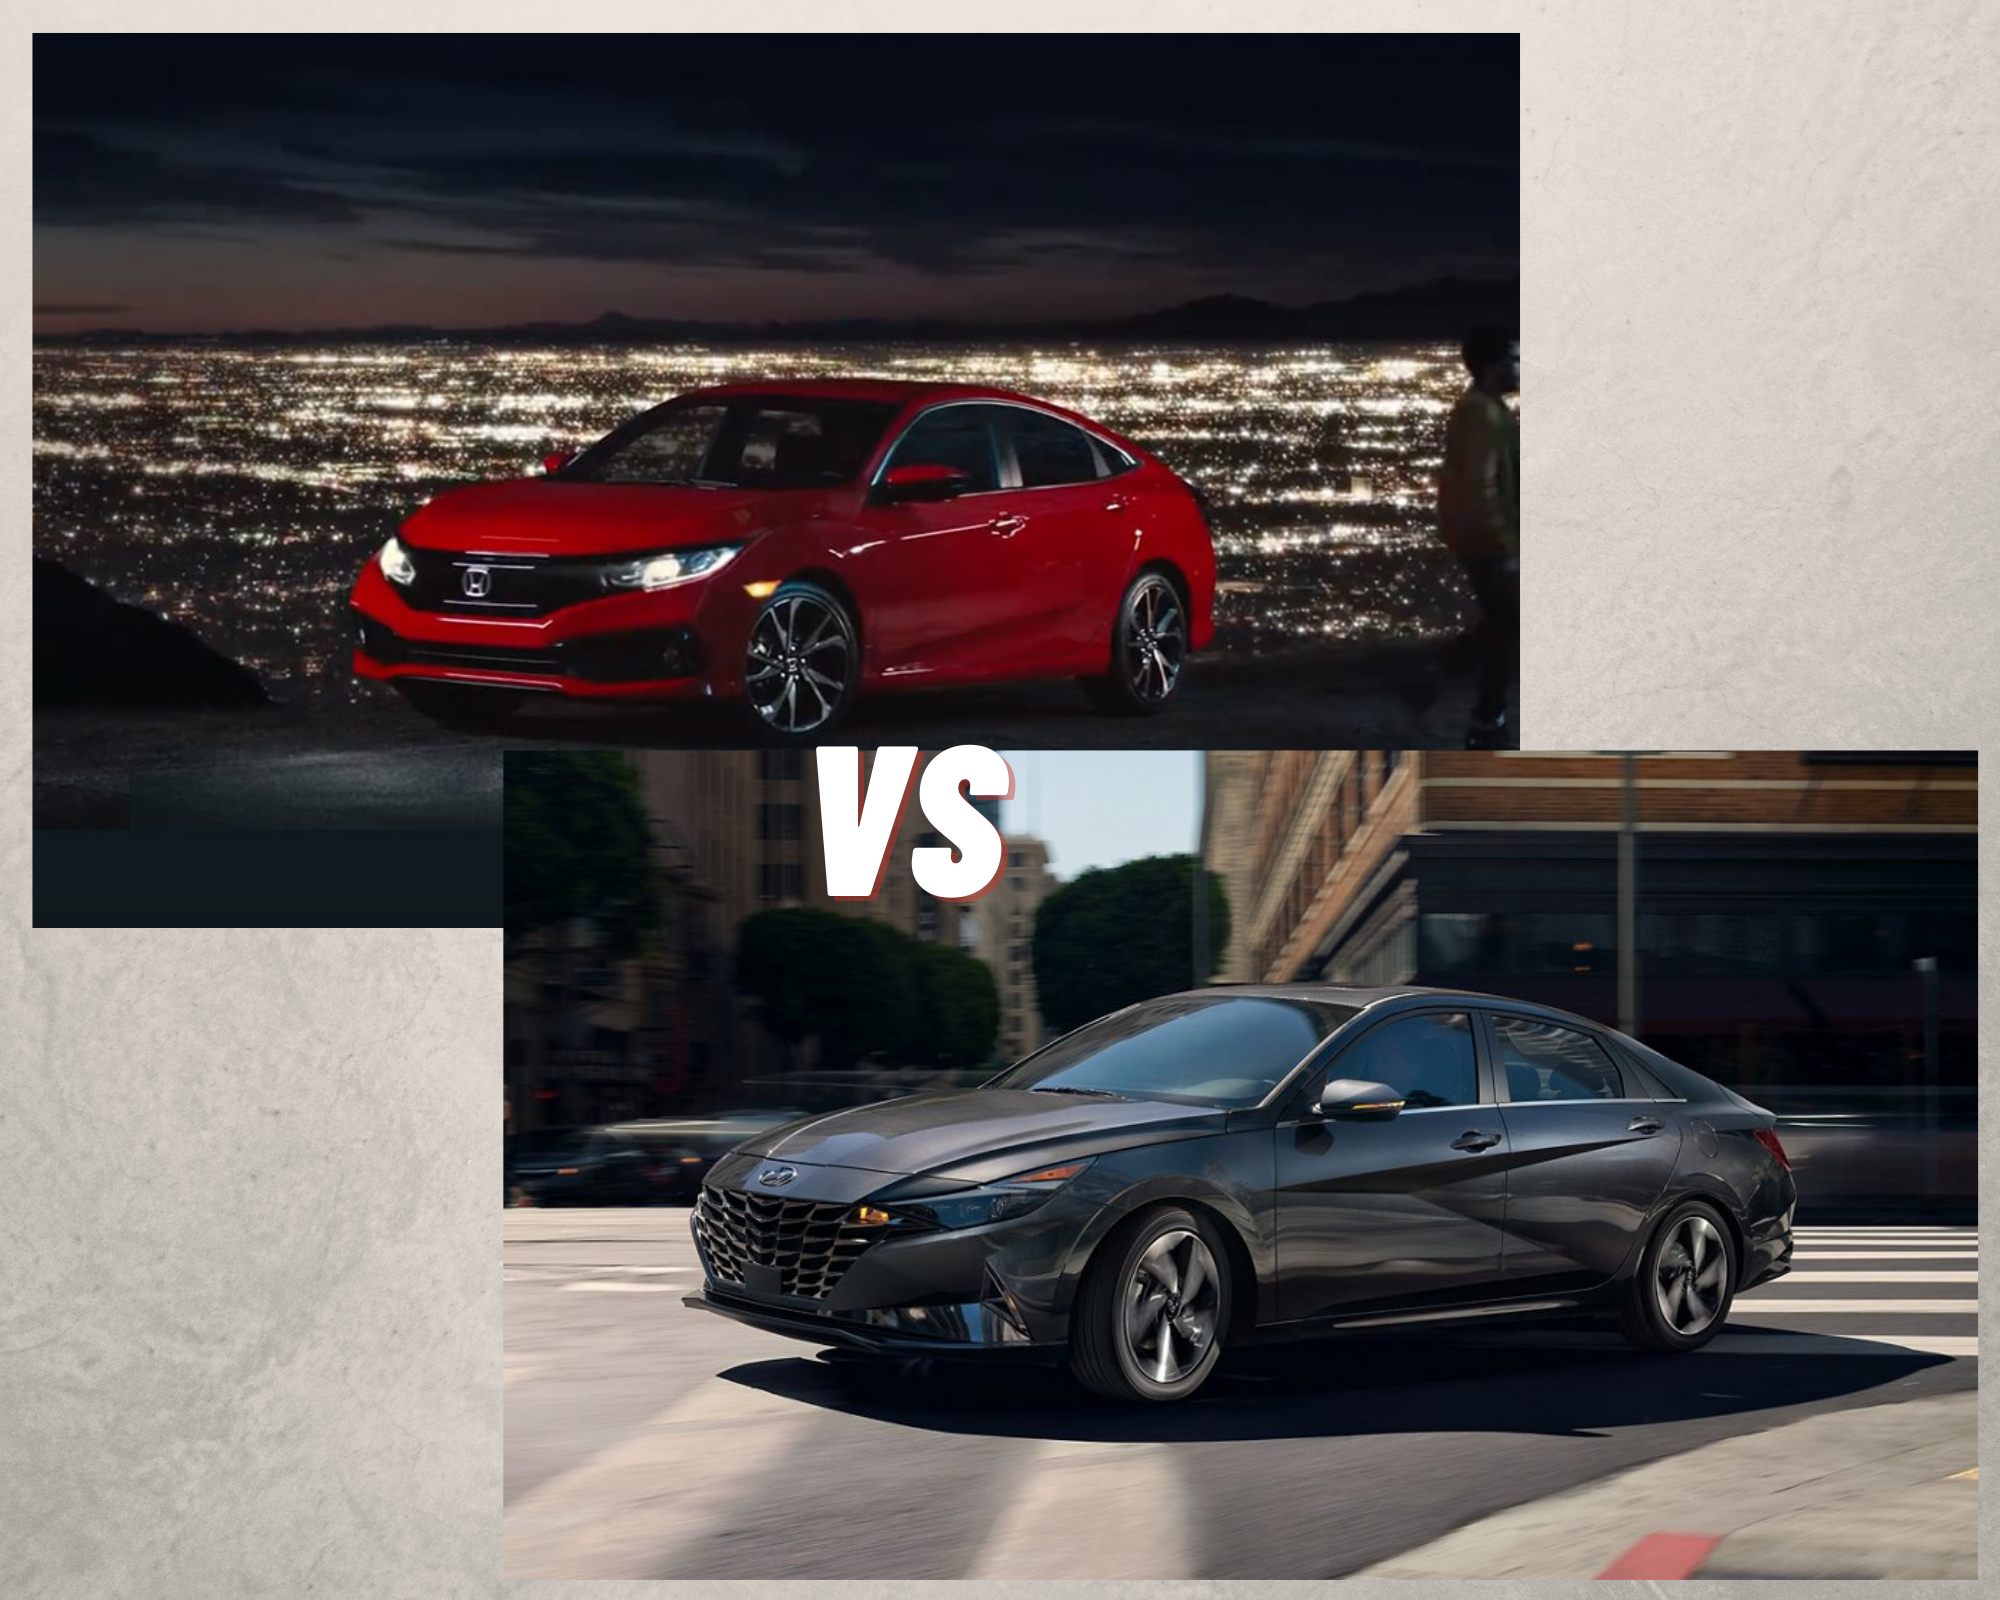 Honda civic vs Hyundai Elantra